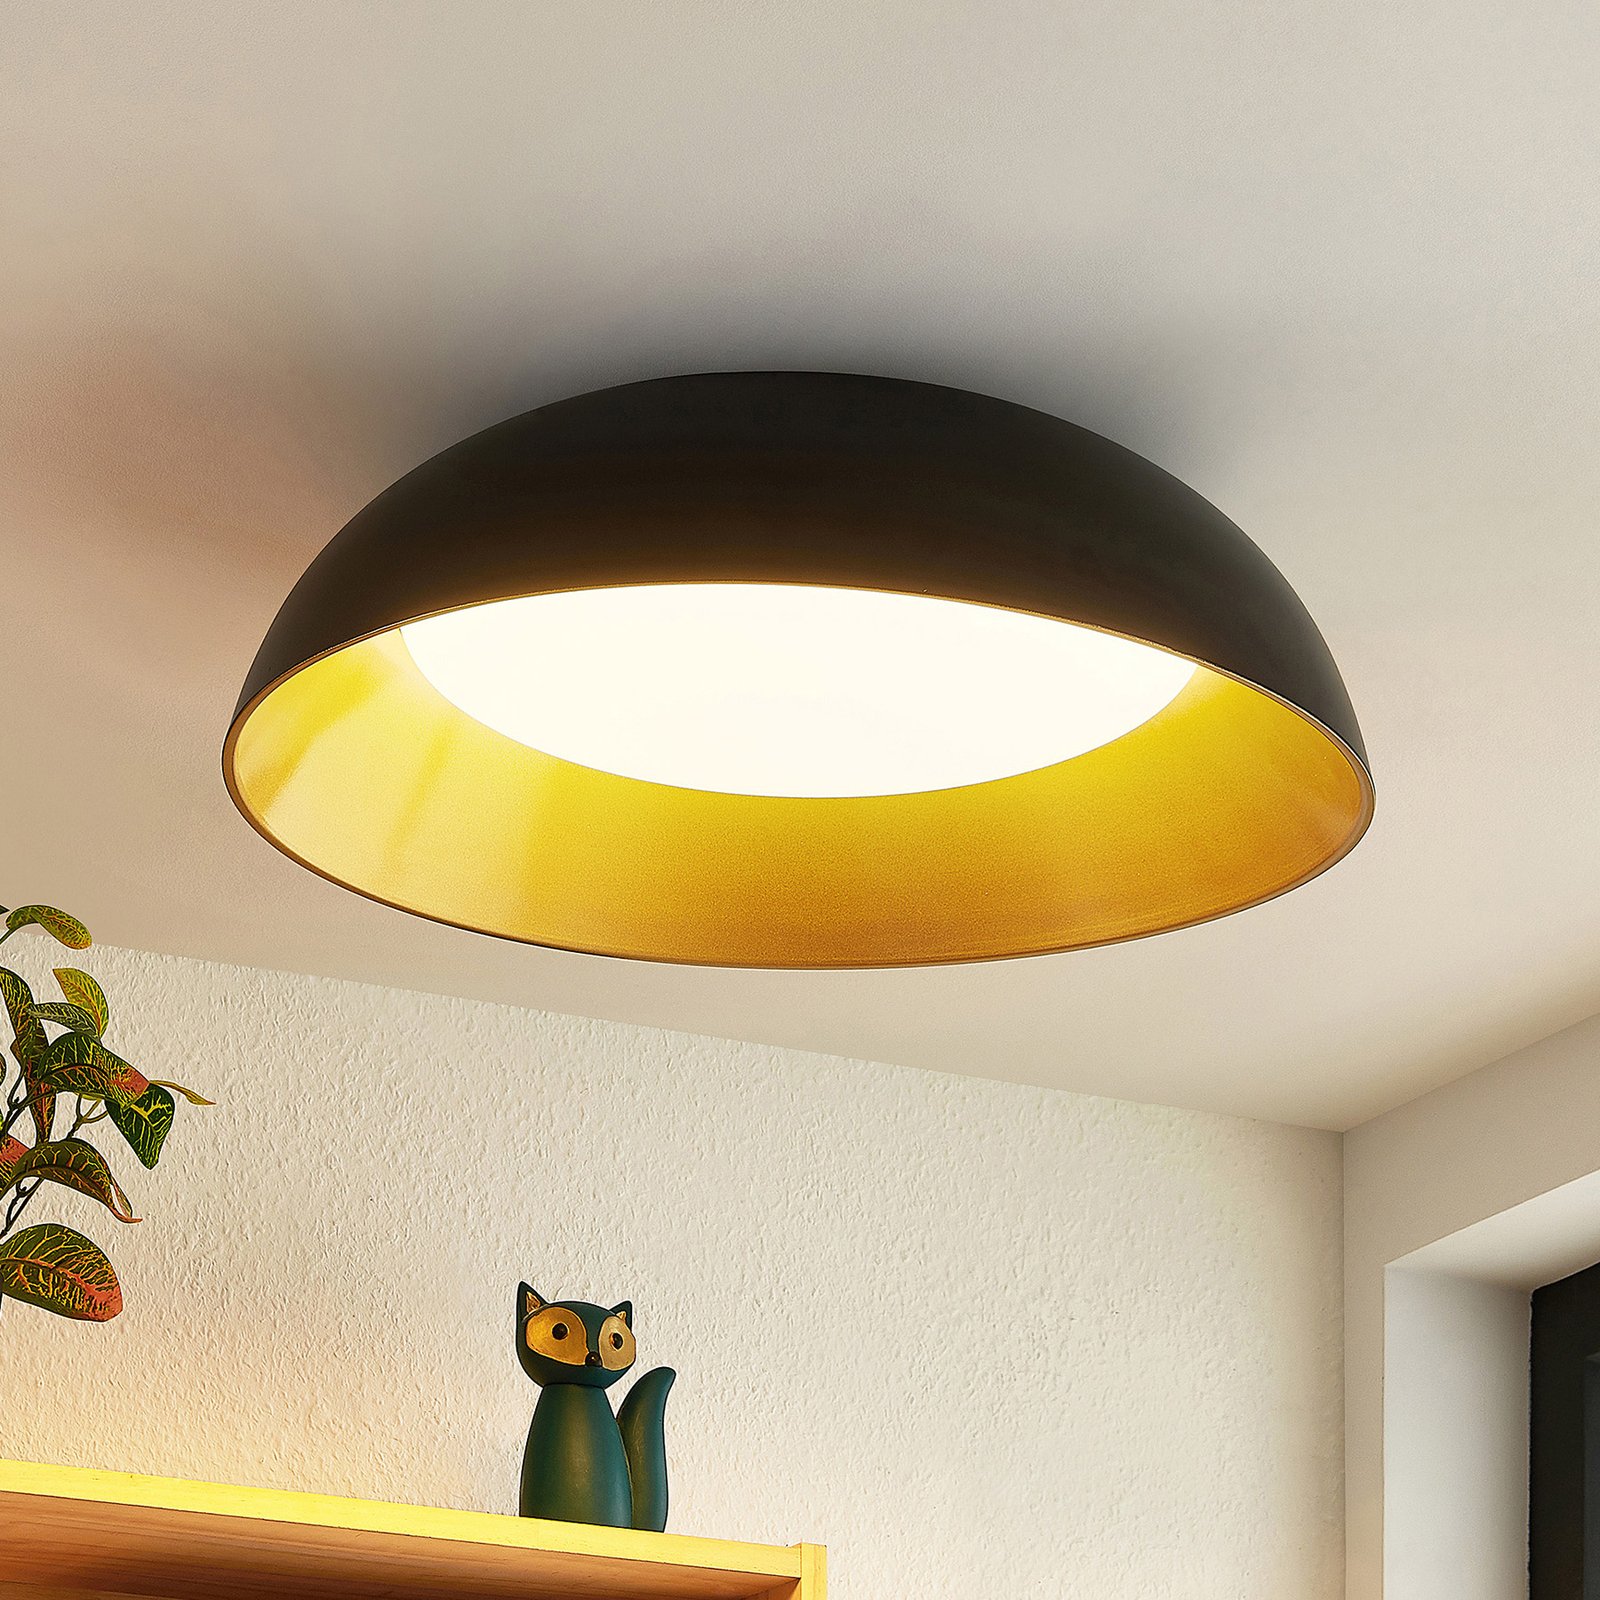 Lindby Juliven LED ceiling light, black and gold